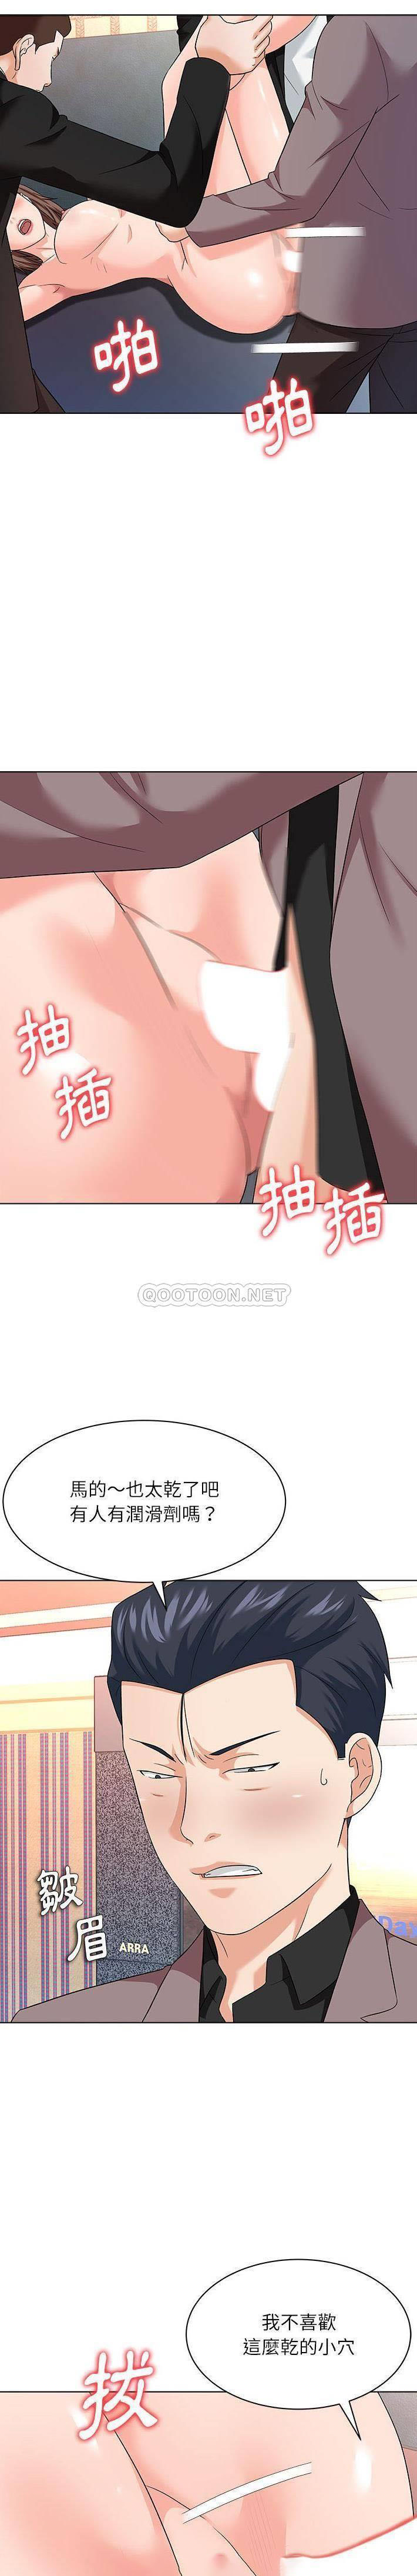 韩国污漫画 豪賭陷阱 第13话 3